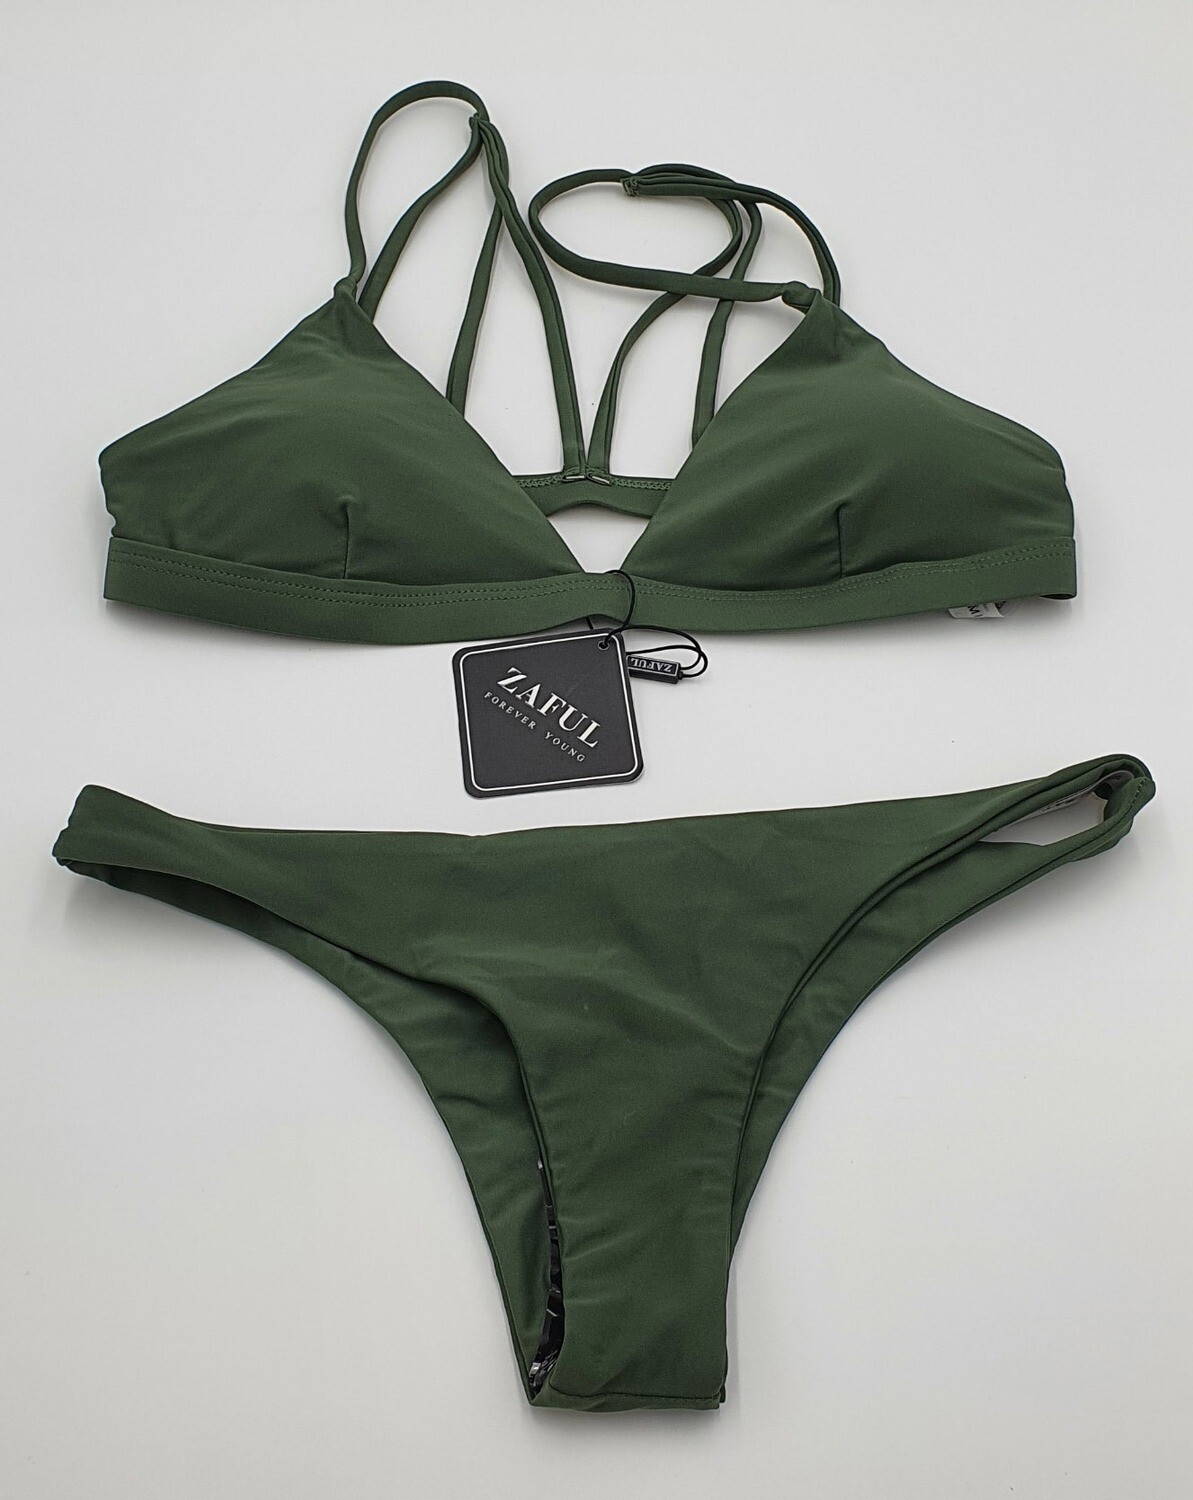 ZAFUL Damen Bikini Set gepolstert mit Spaghetti-Trägern und Tanga Bikini Höschen Gr. 38 grün